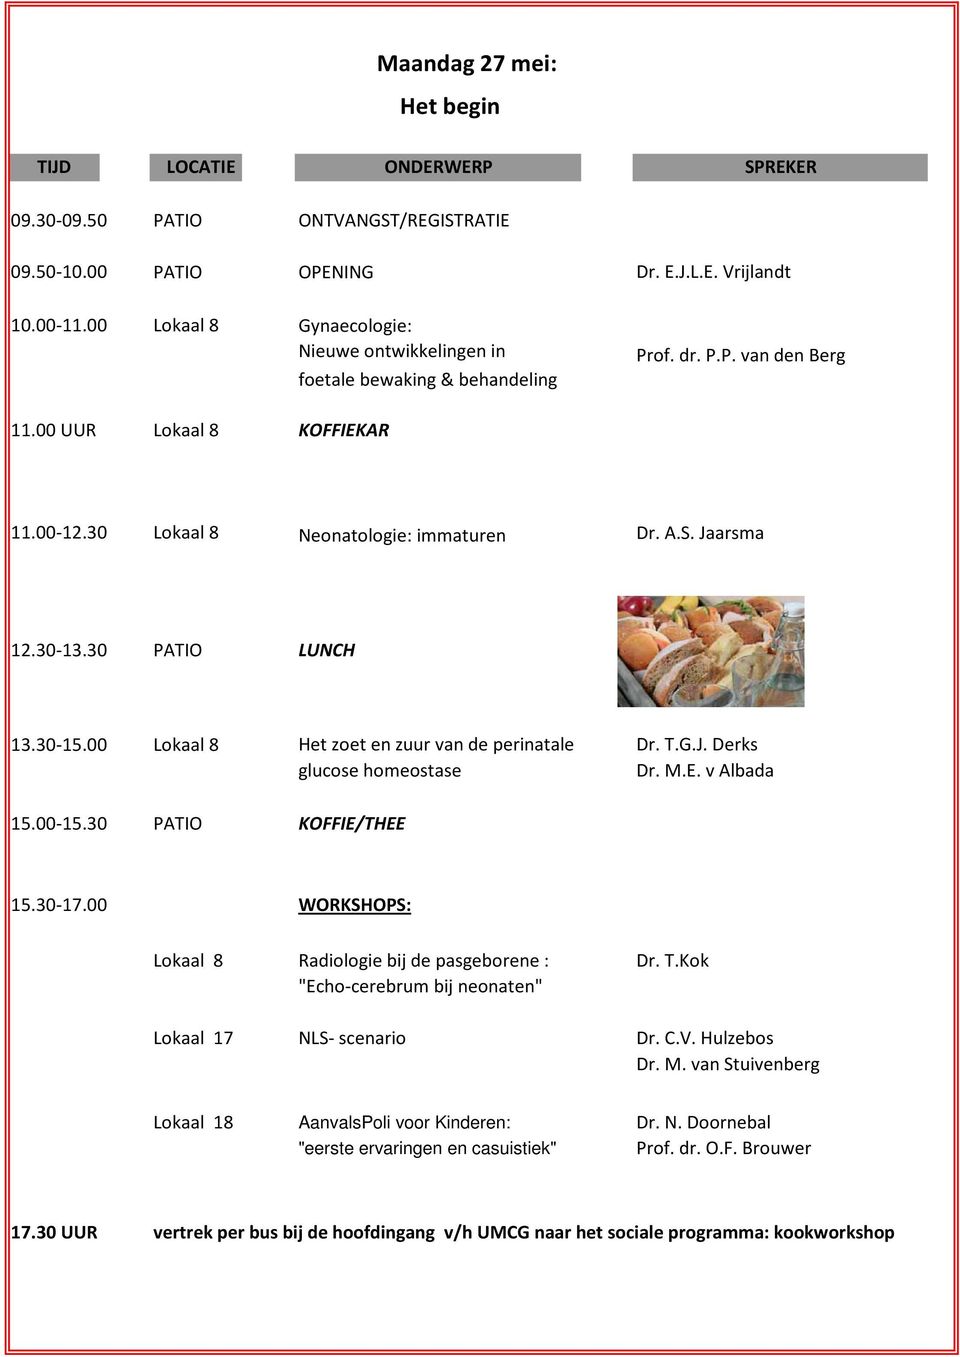 Jaarsma 12.30-13.30 PATIO LUNCH 13.30-15.00 Lokaal 8 Het zoet en zuur van de perinatale Dr. T.G.J. Derks glucose homeostase Dr. M.E. v Albada 15.00-15.30 PATIO KOFFIE/THEE 15.30-17.